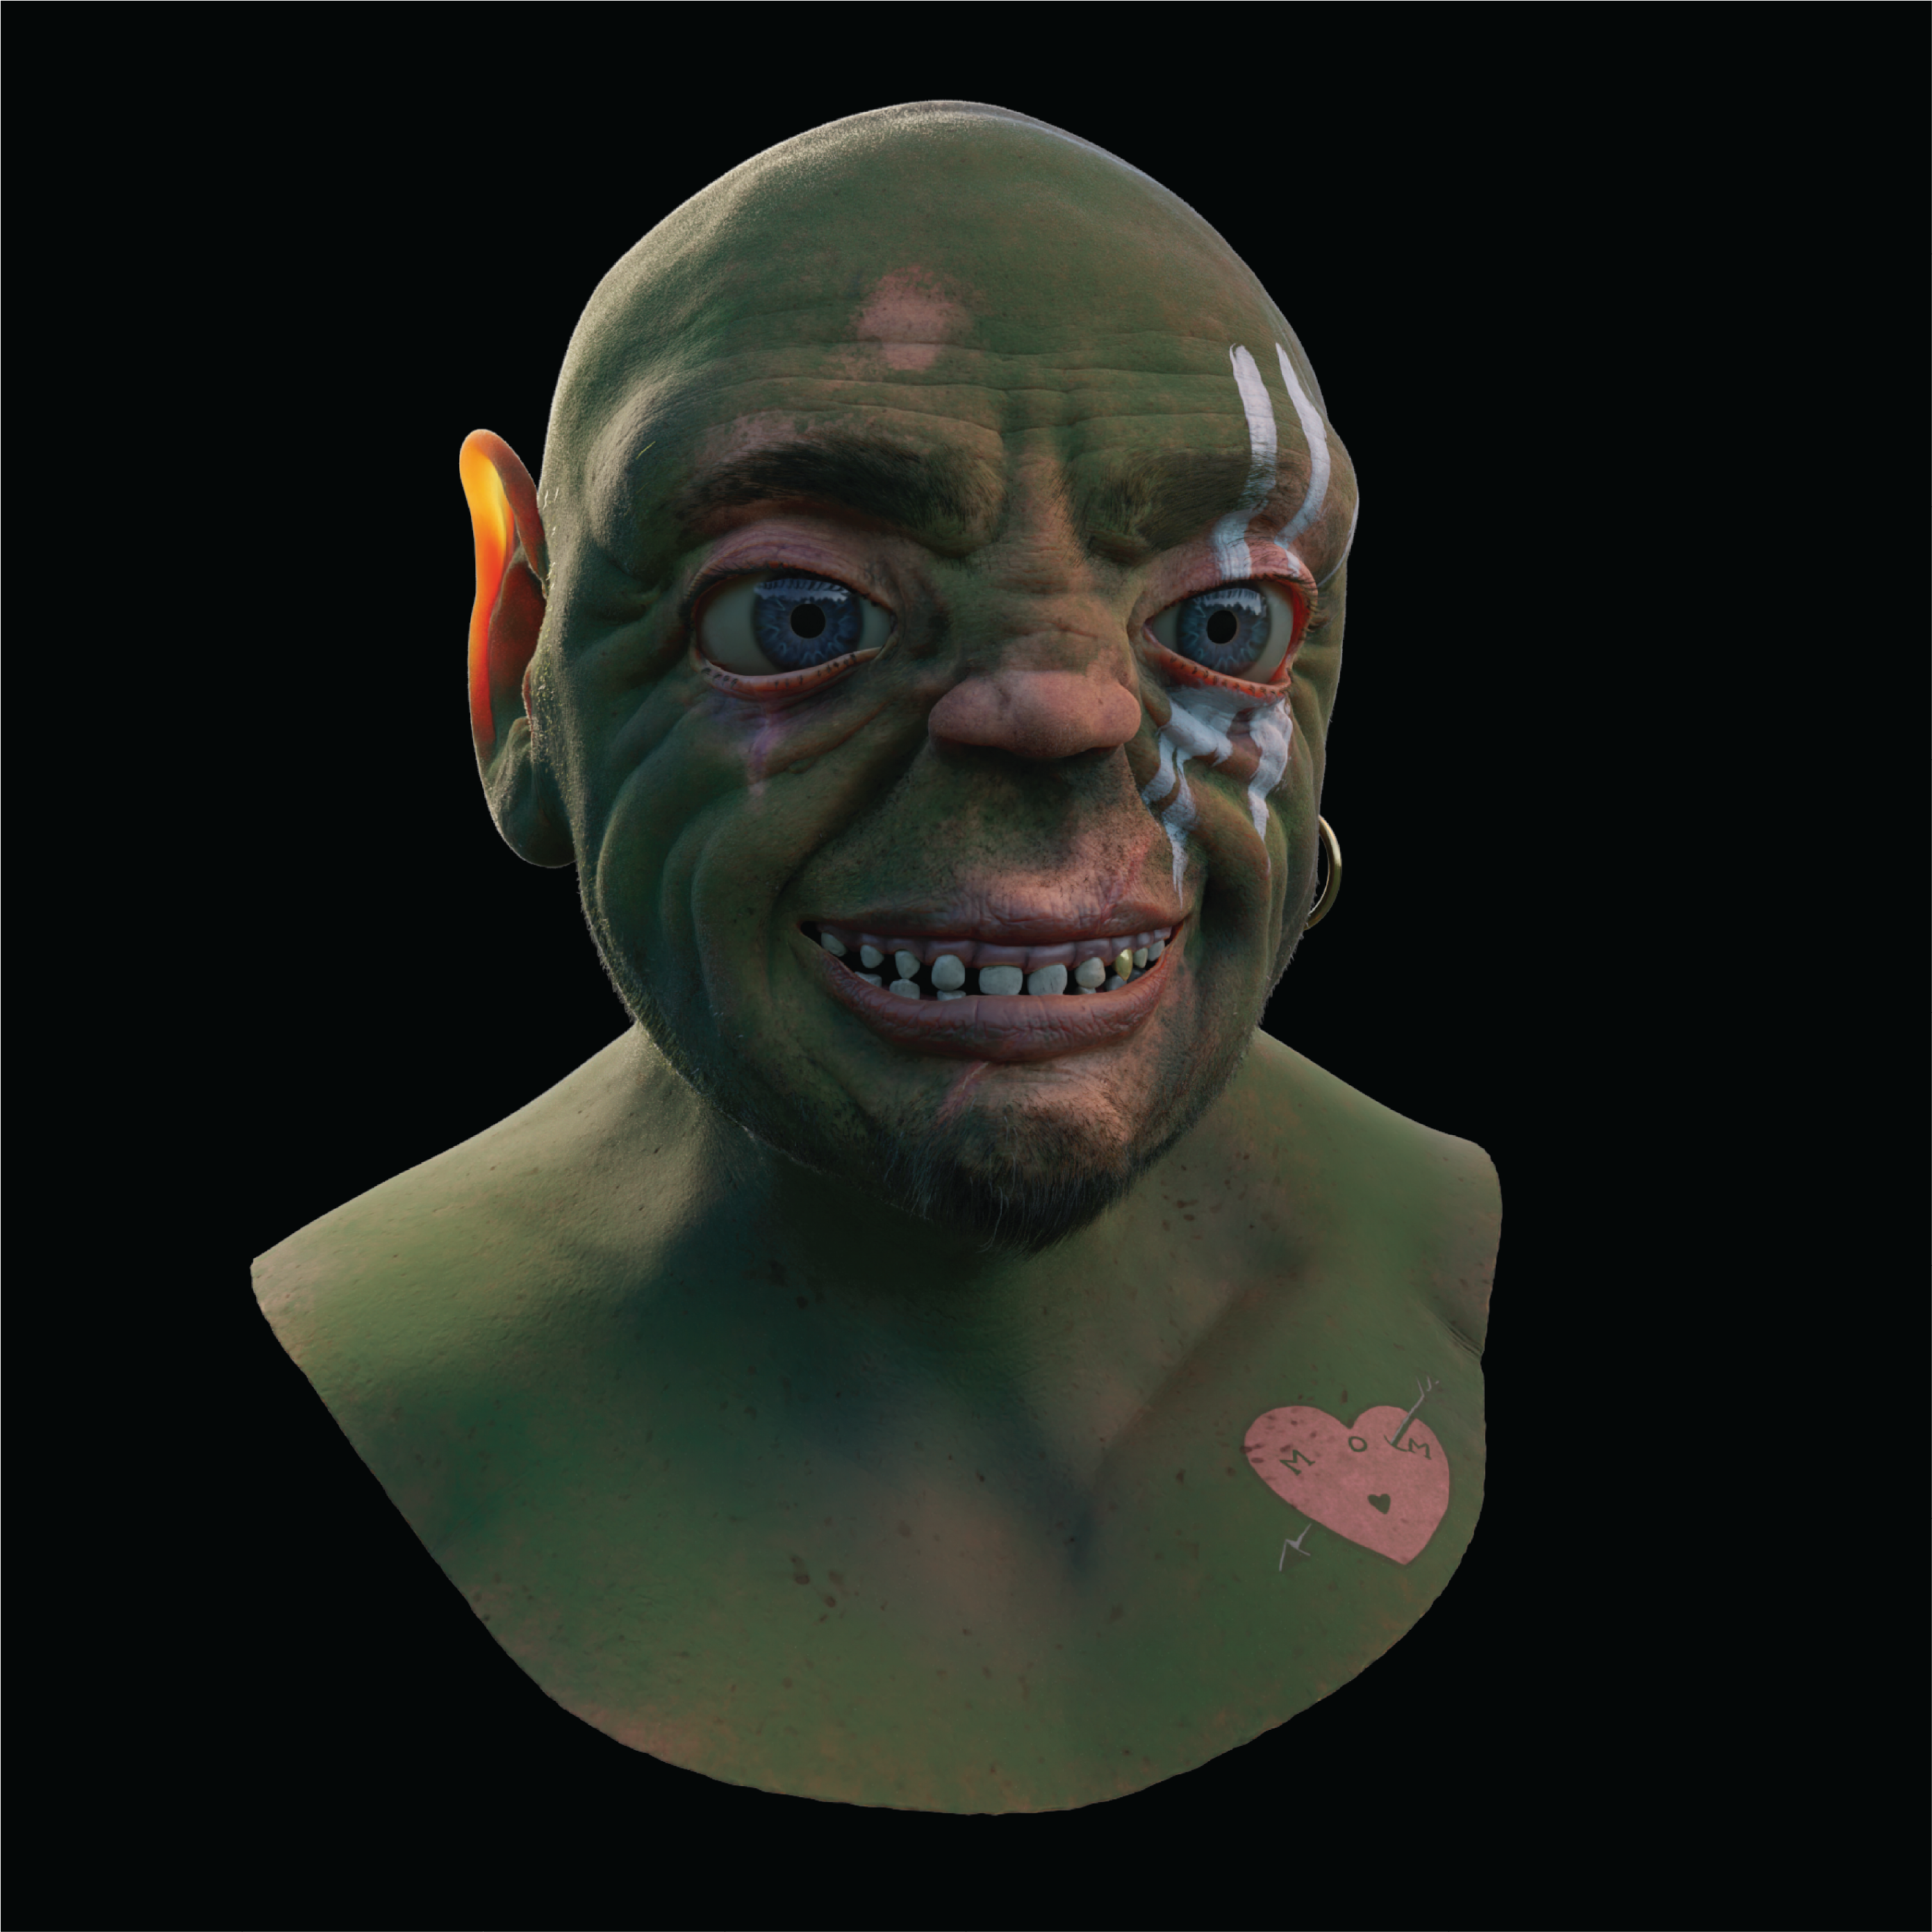 Ogre Final render Pose 1 - Smiling